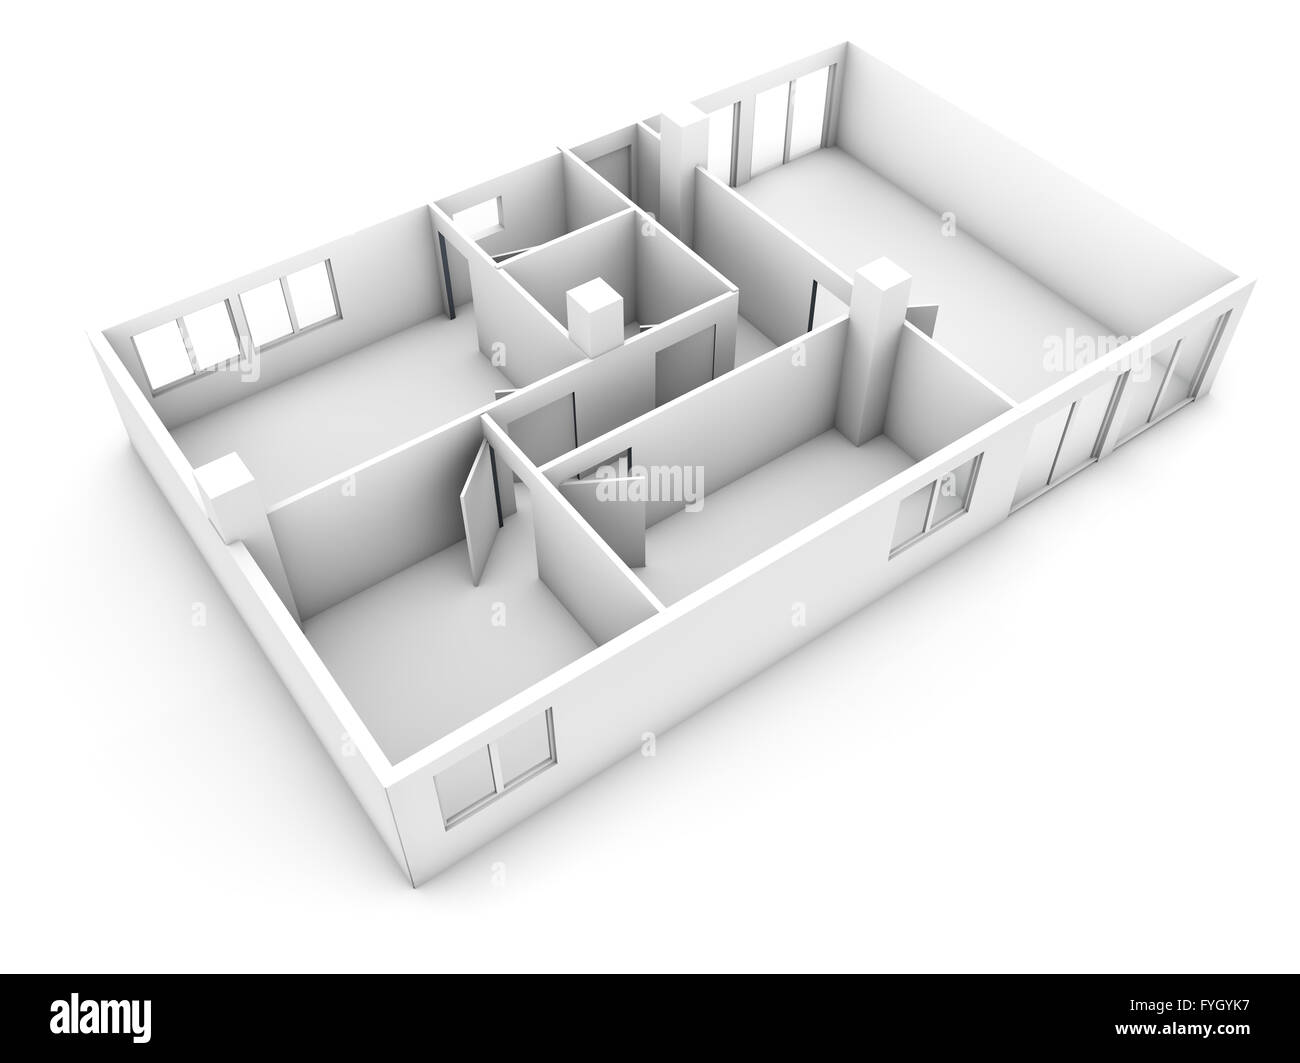 Concetto di piano: eseguire il rendering di una struttura piatta isolati su sfondo bianco Foto Stock